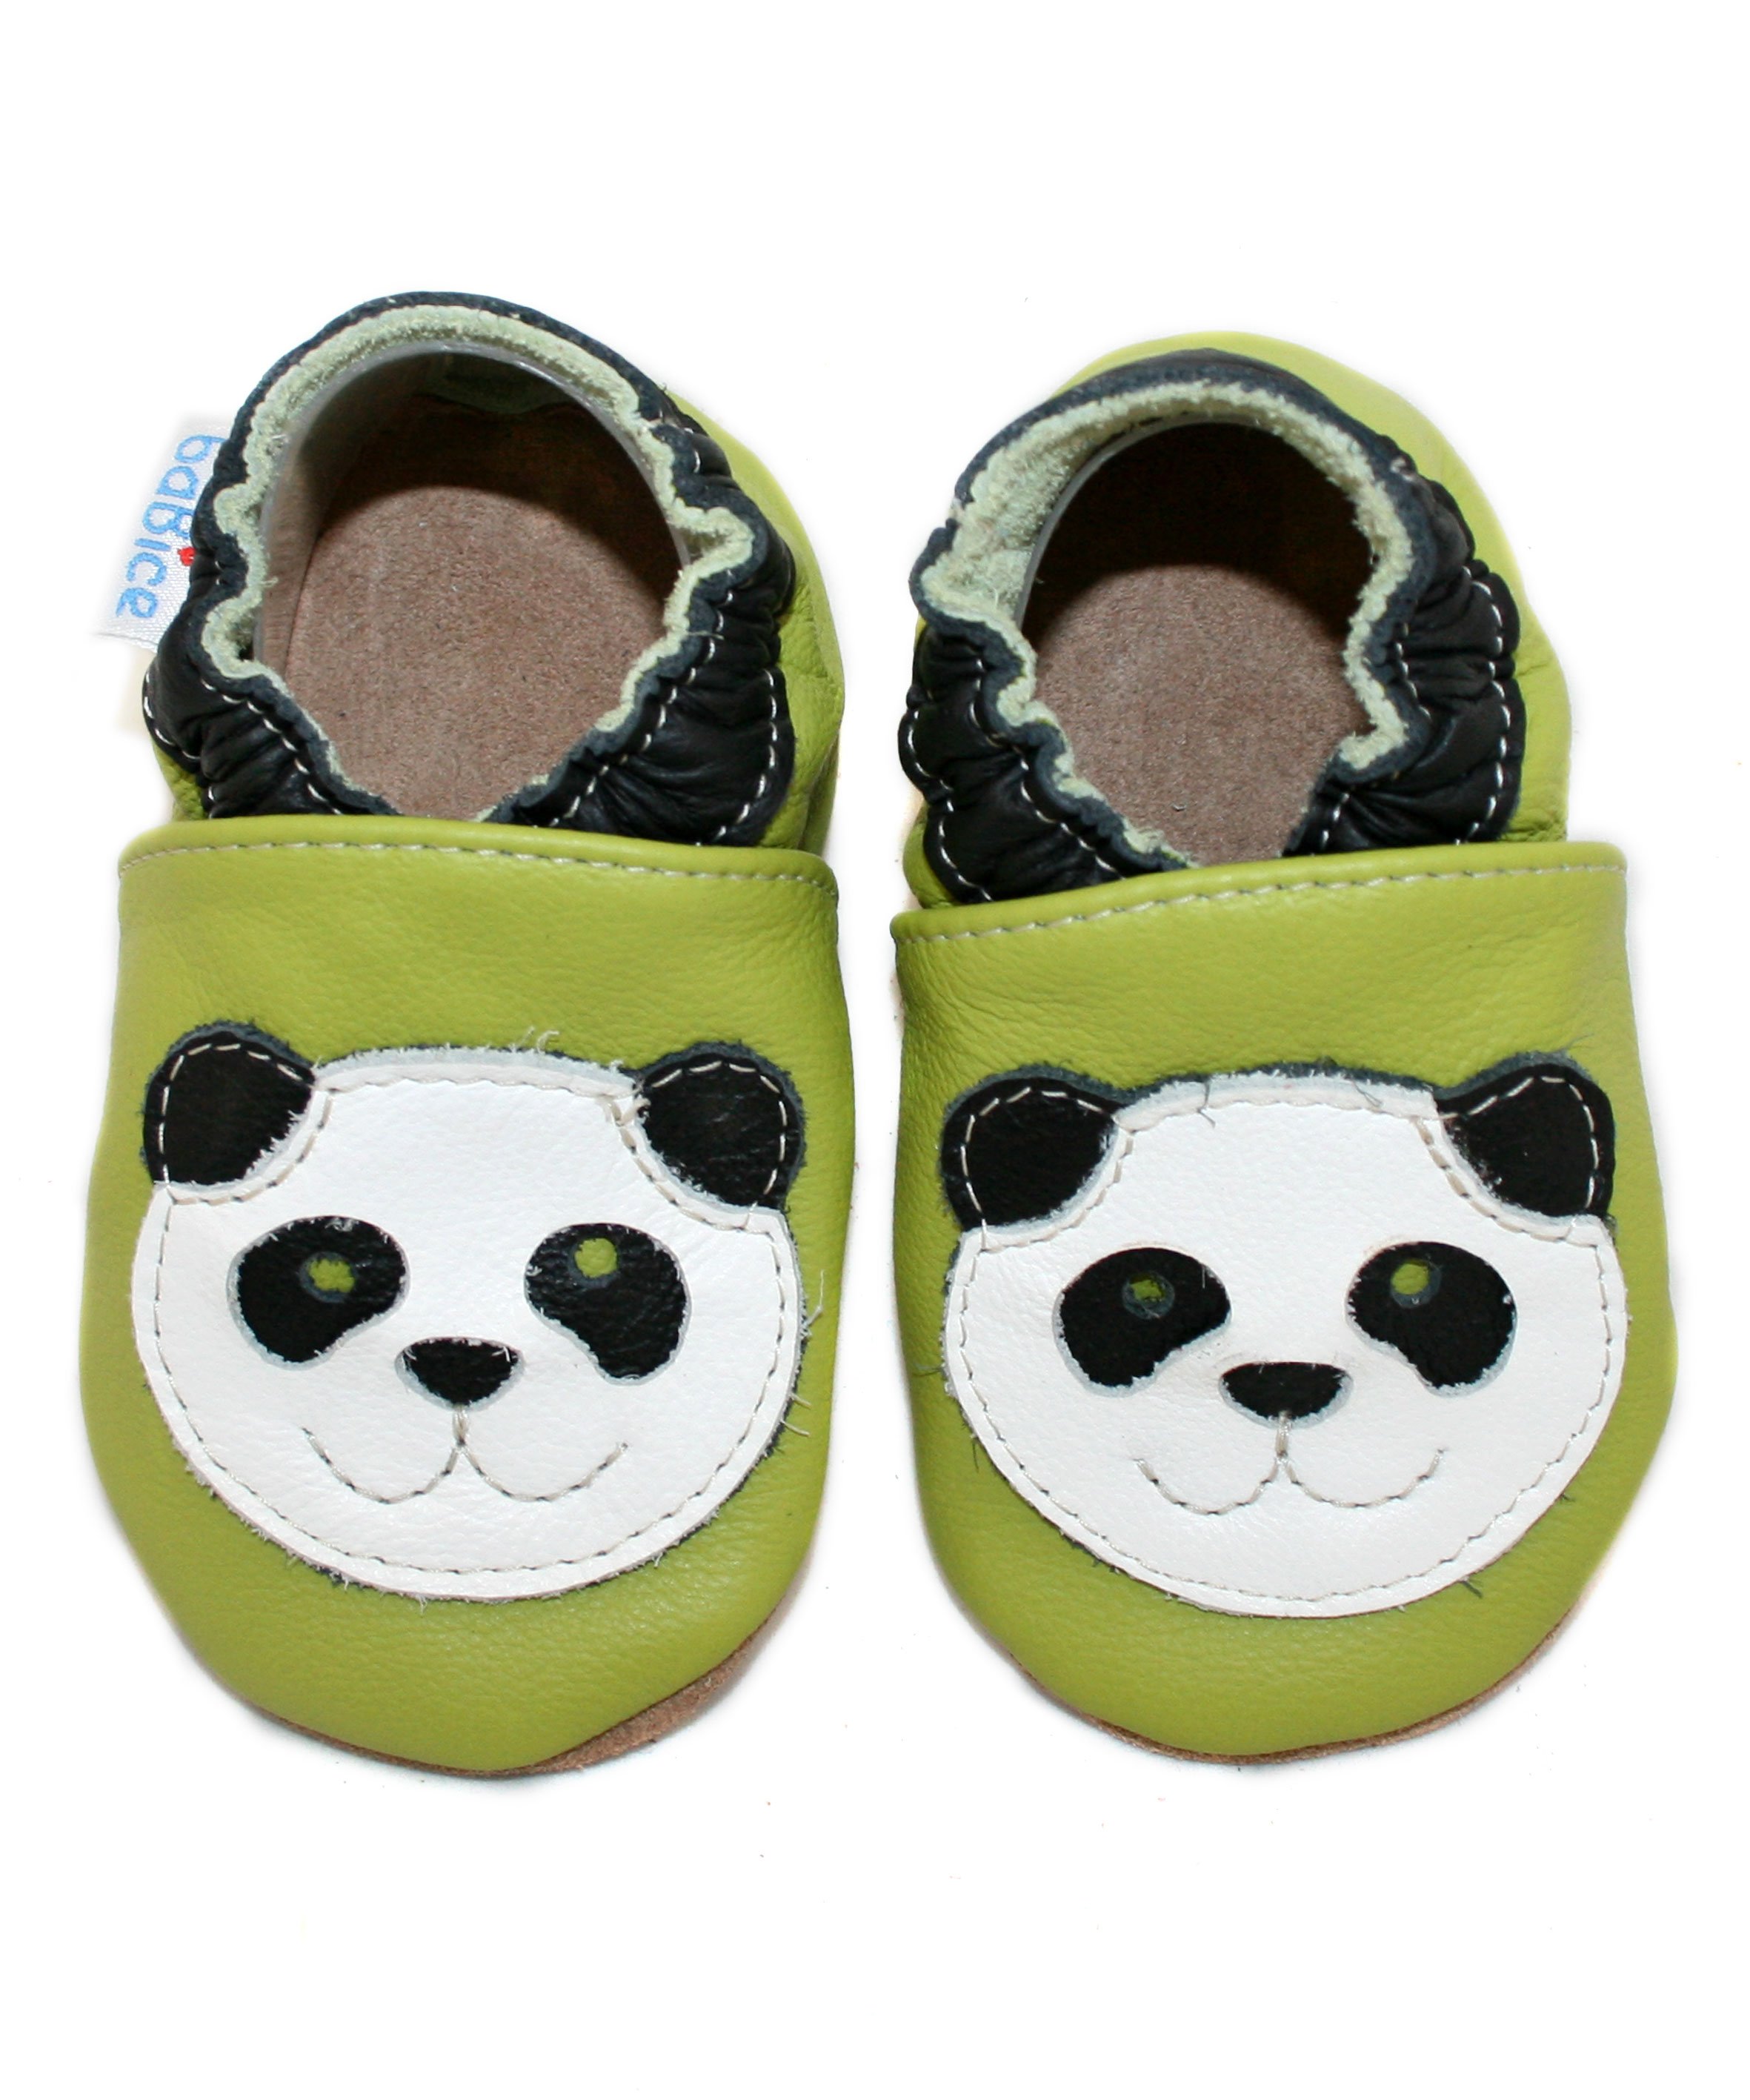 Kinderschuhe Panda 16/17 (0 - 6 Monate) Krabbelsohle